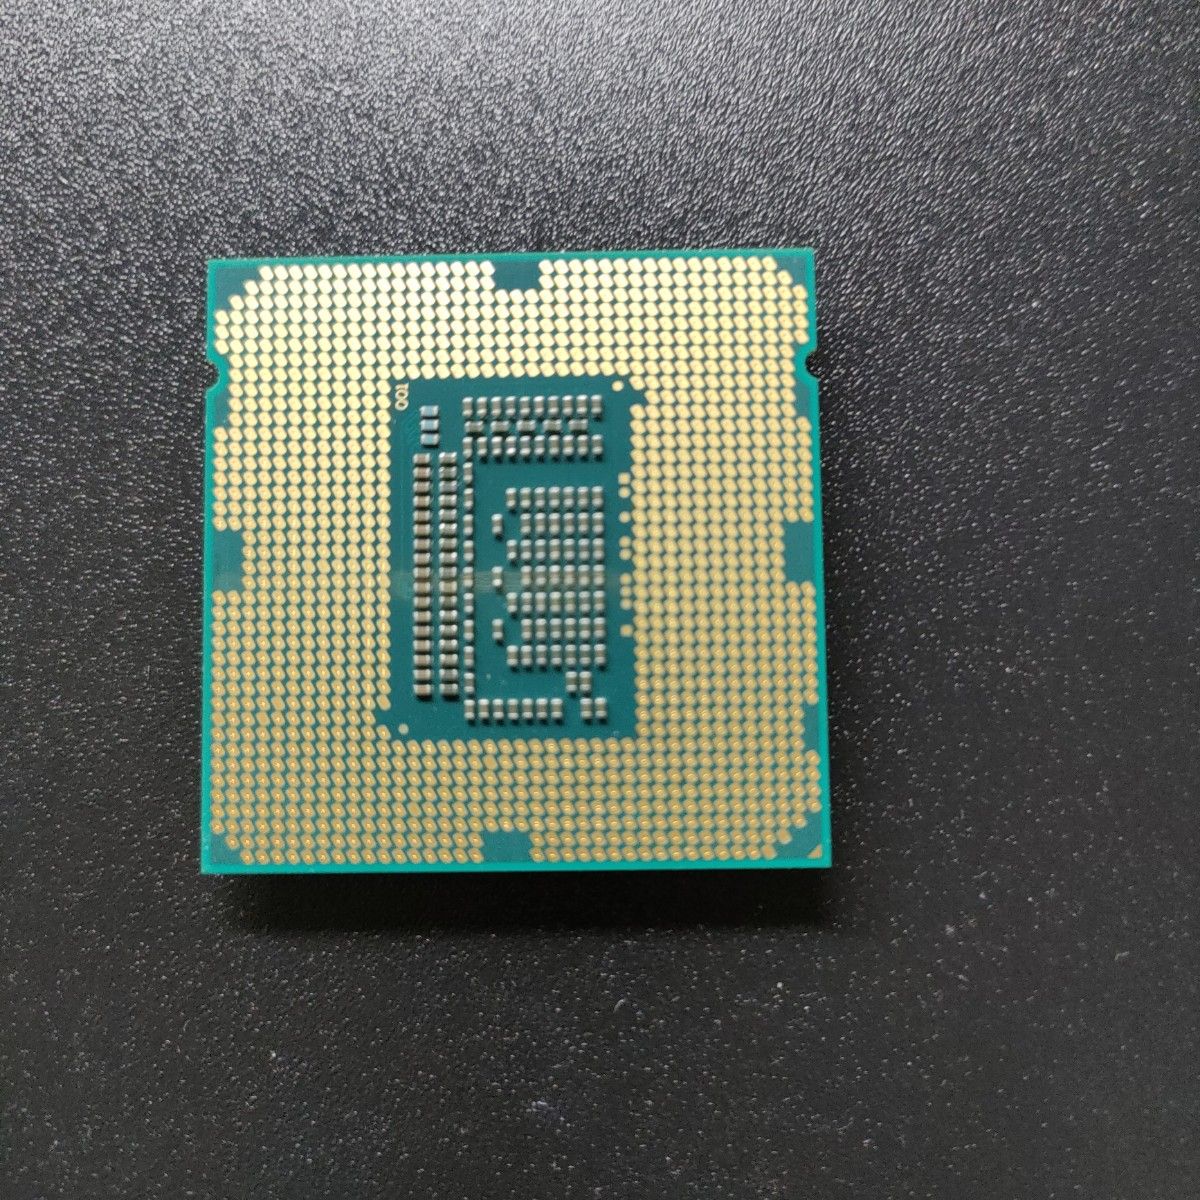  Intel Core i5 3335S　動作品